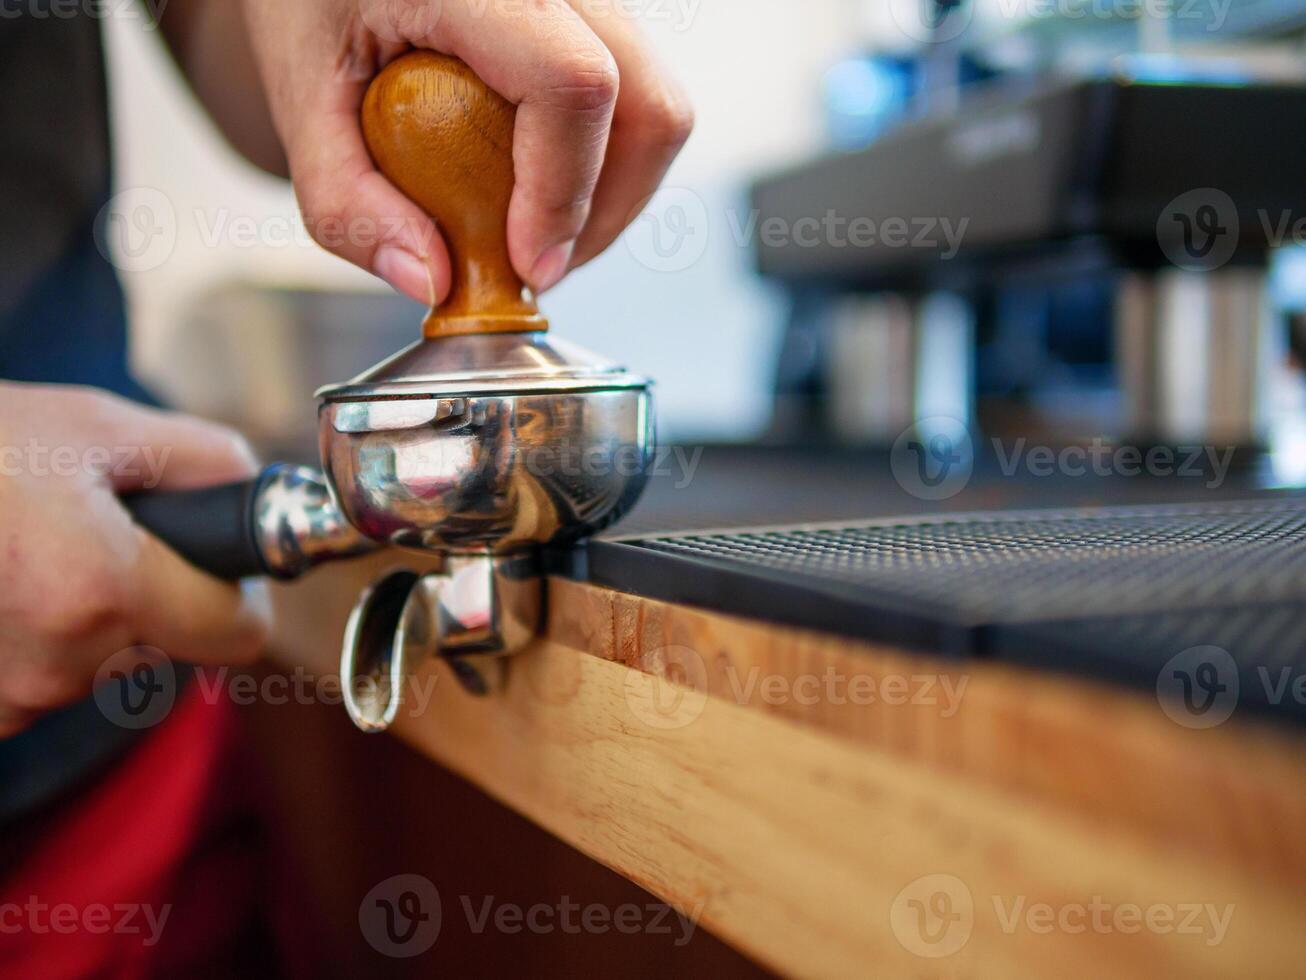 hand av en Barista innehav en portafilter och en kaffe manipulera framställning ett espresso kaffe. Barista trycker på jord kaffe använder sig av en manipulera i en kaffe affär foto